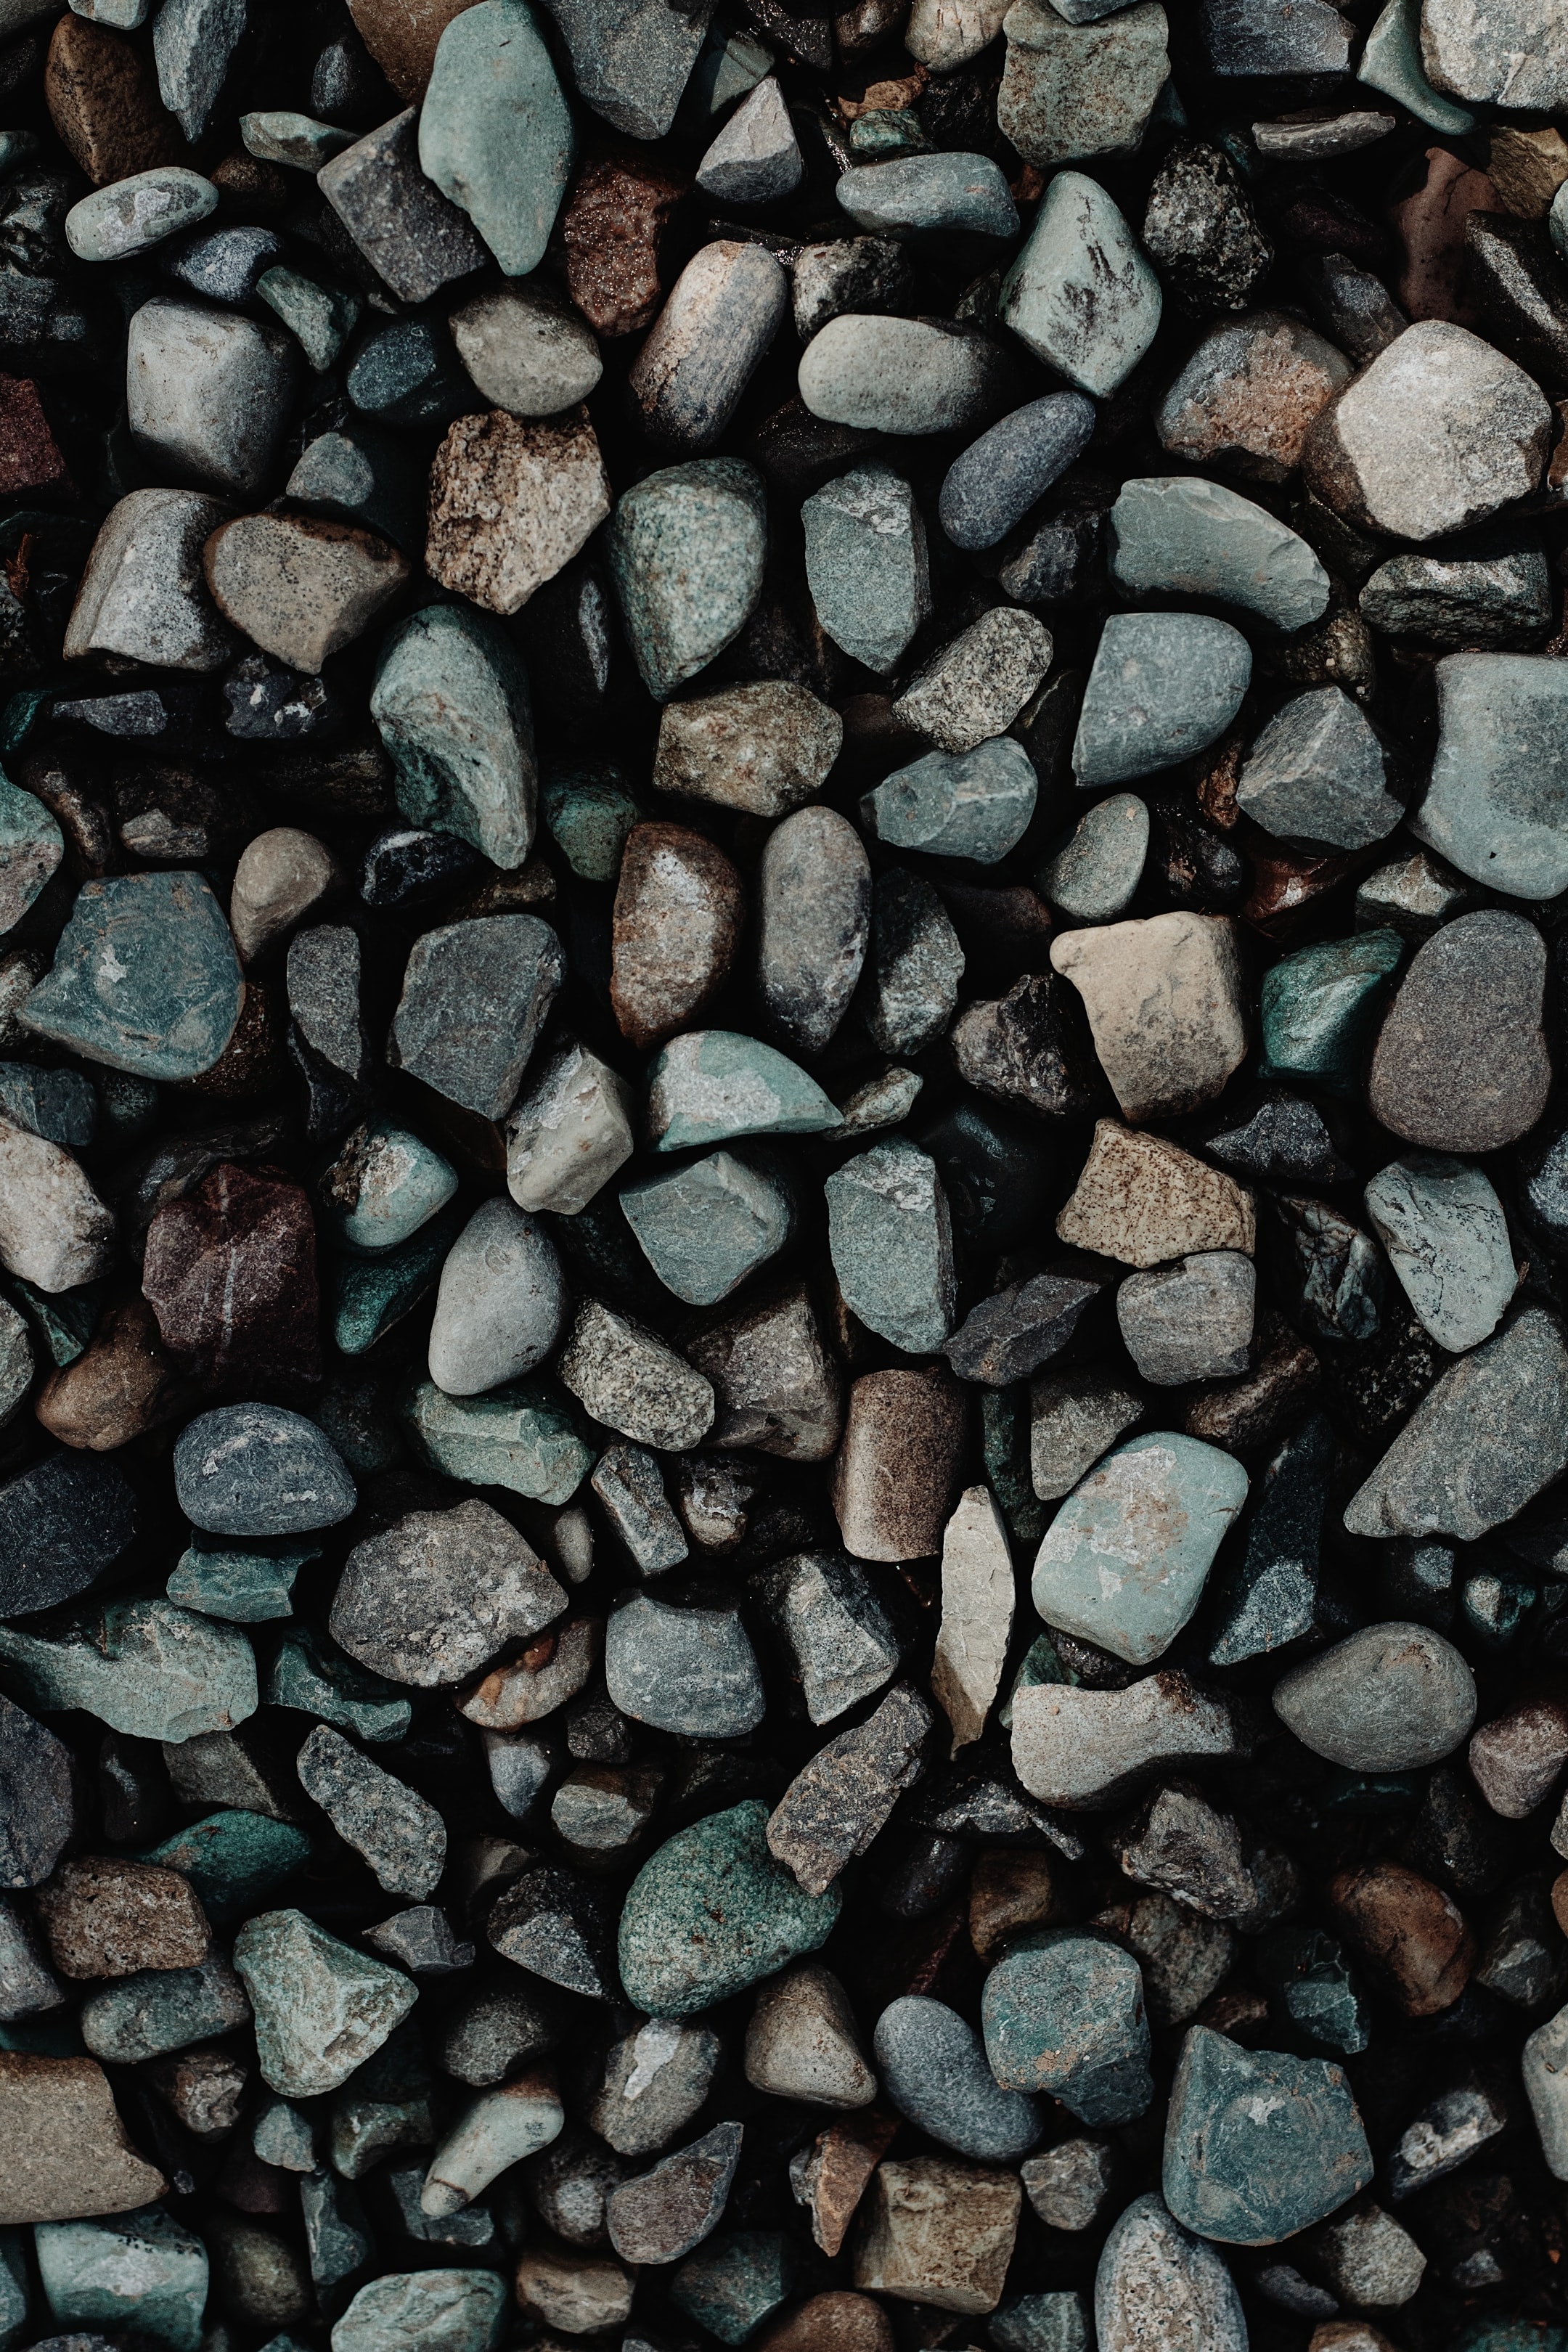 Popular Granite Image for Phone